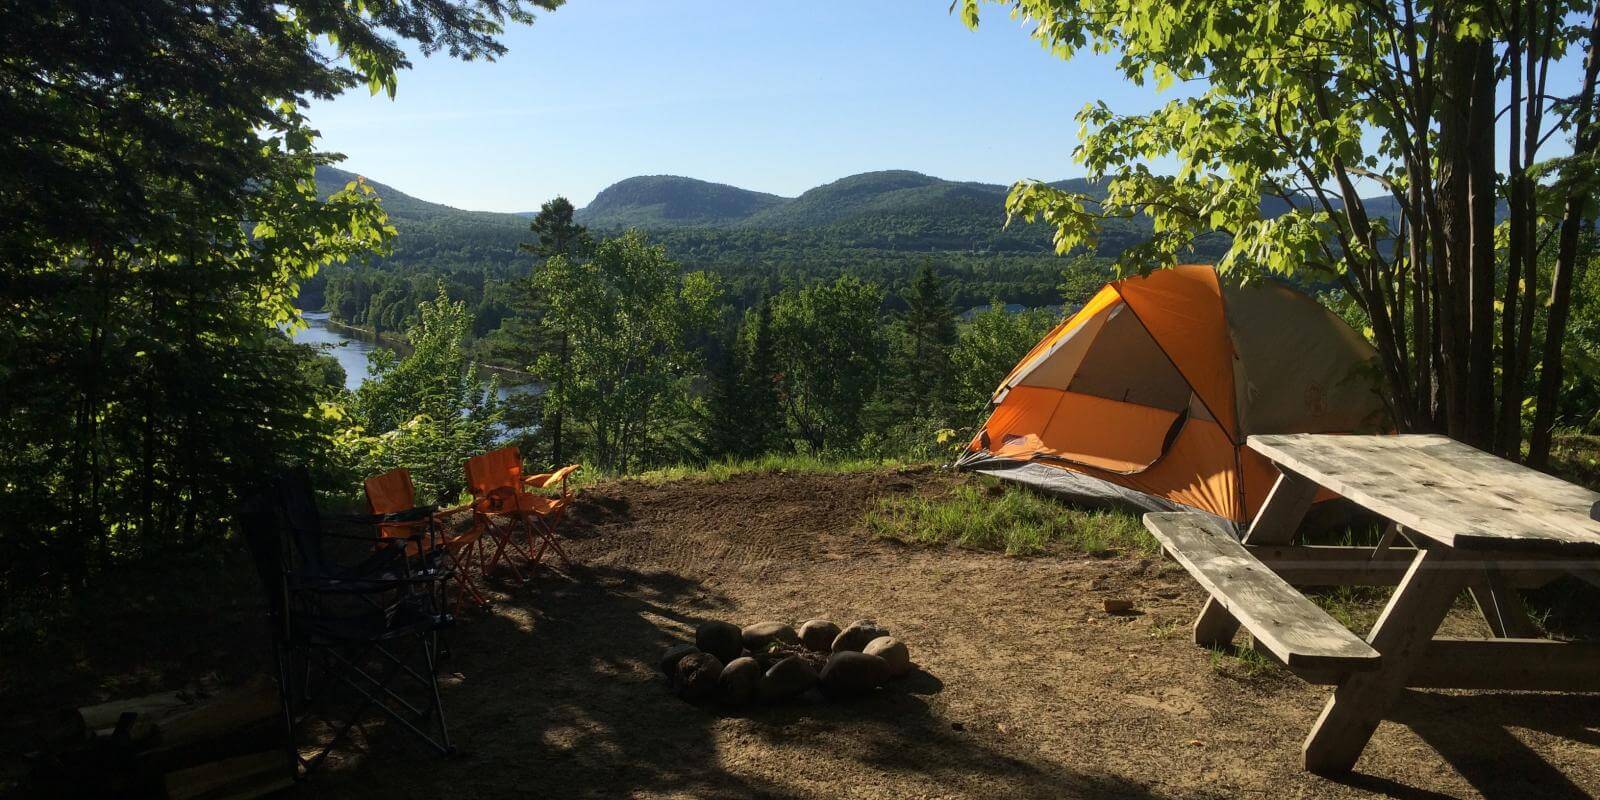 Camping Valcartier - terrain avec vue sur les montagnes